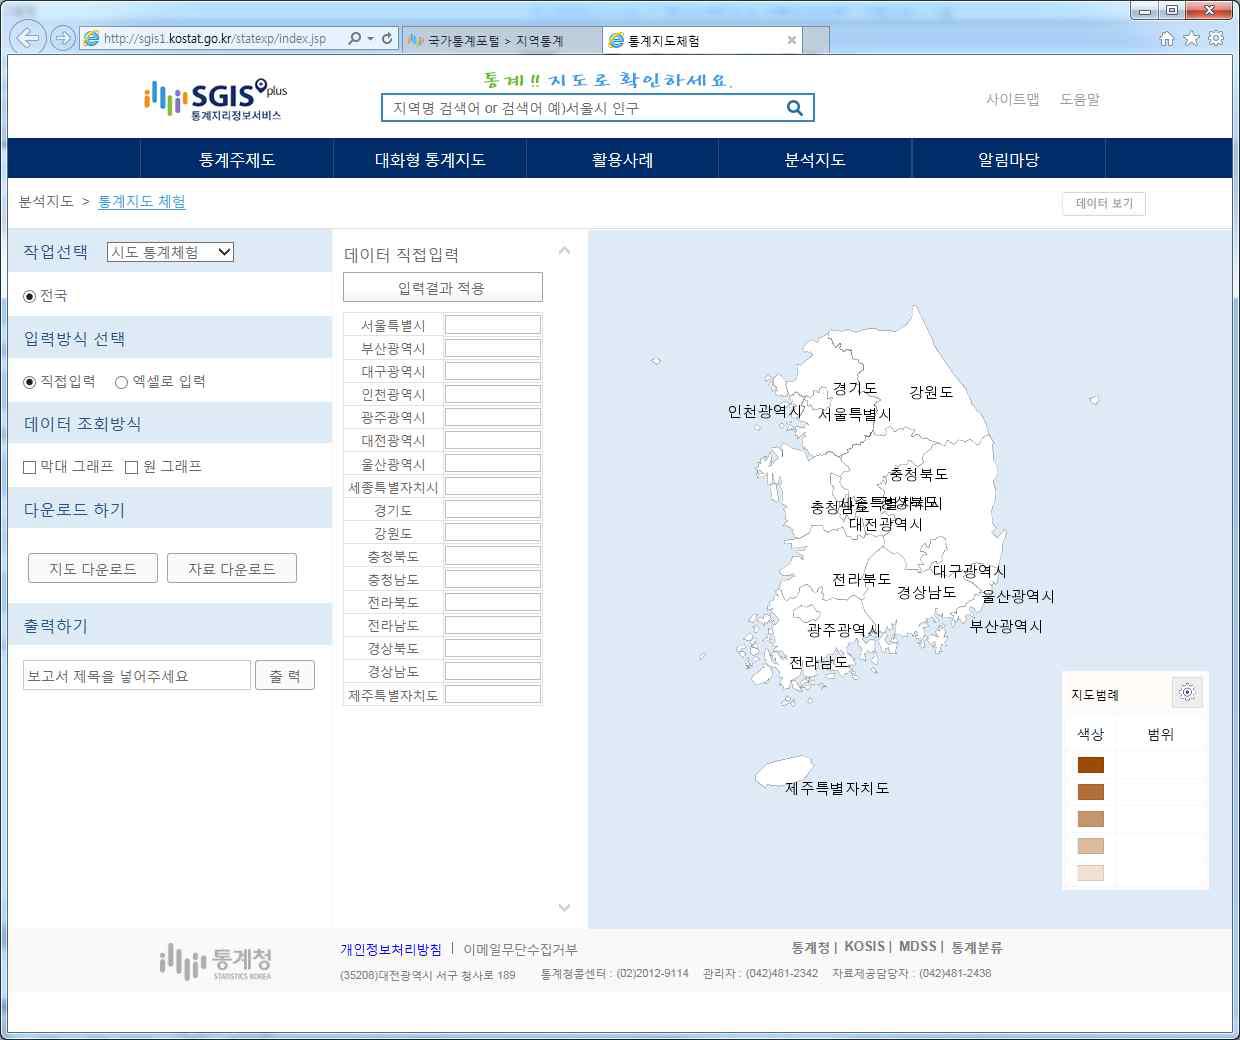 통계지리정보서비스에서 제공하는 지도 차트 생성 도구